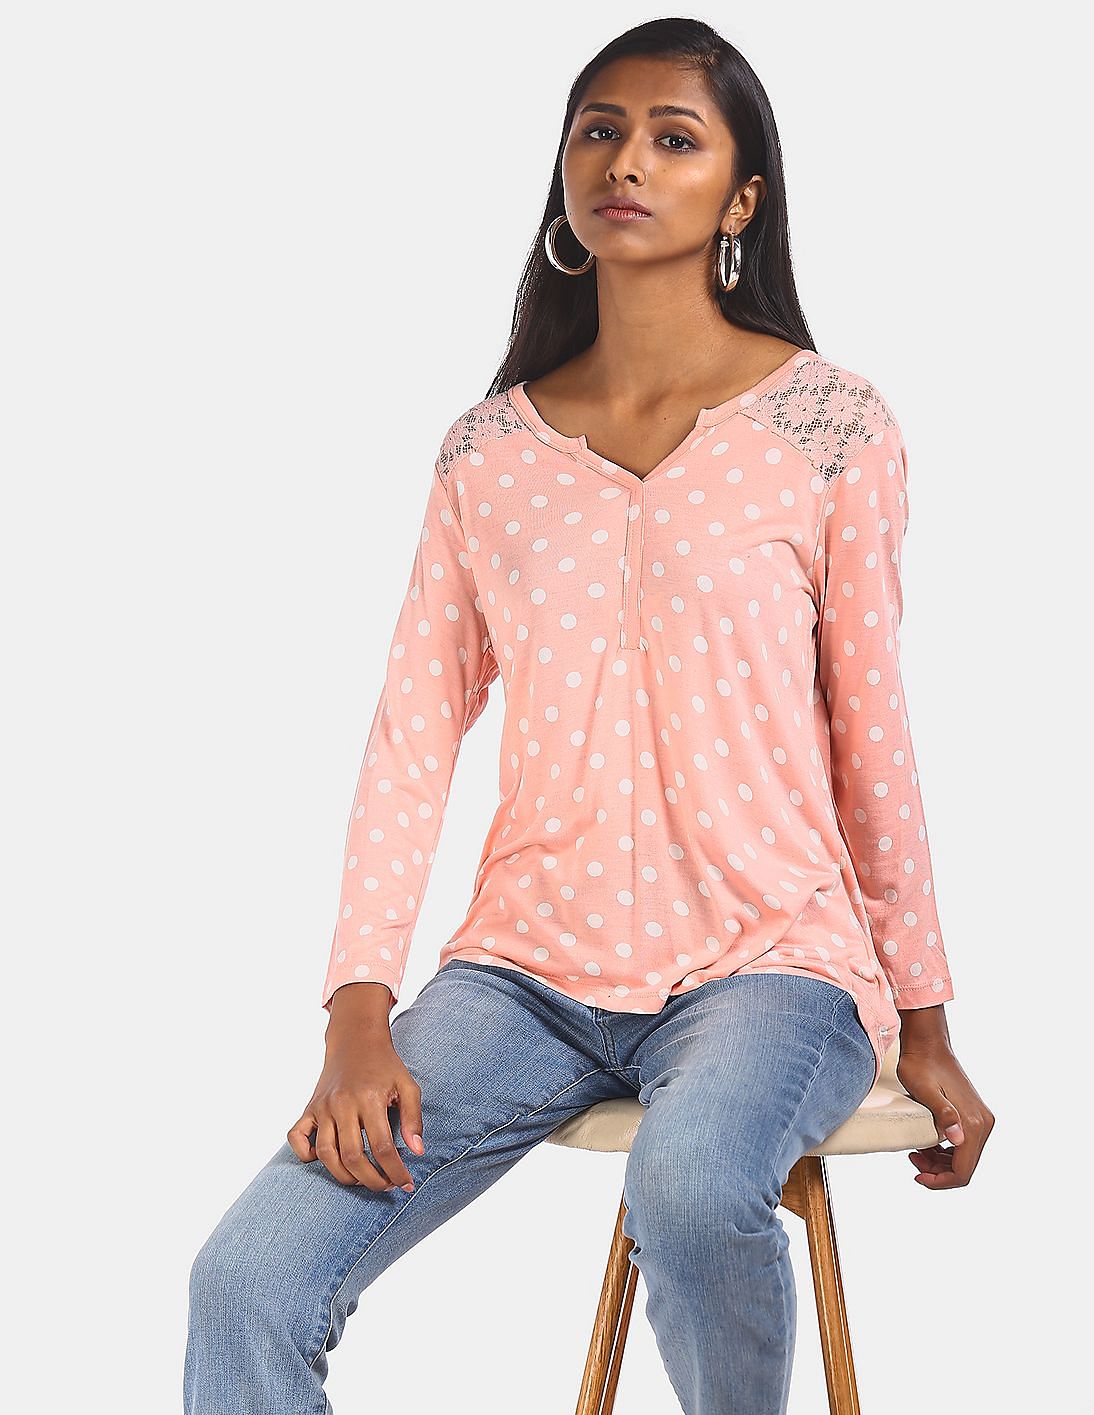 Buy Elle Studio Women Pink Long Sleeve Polka Dot Printed Top - NNNOW.com